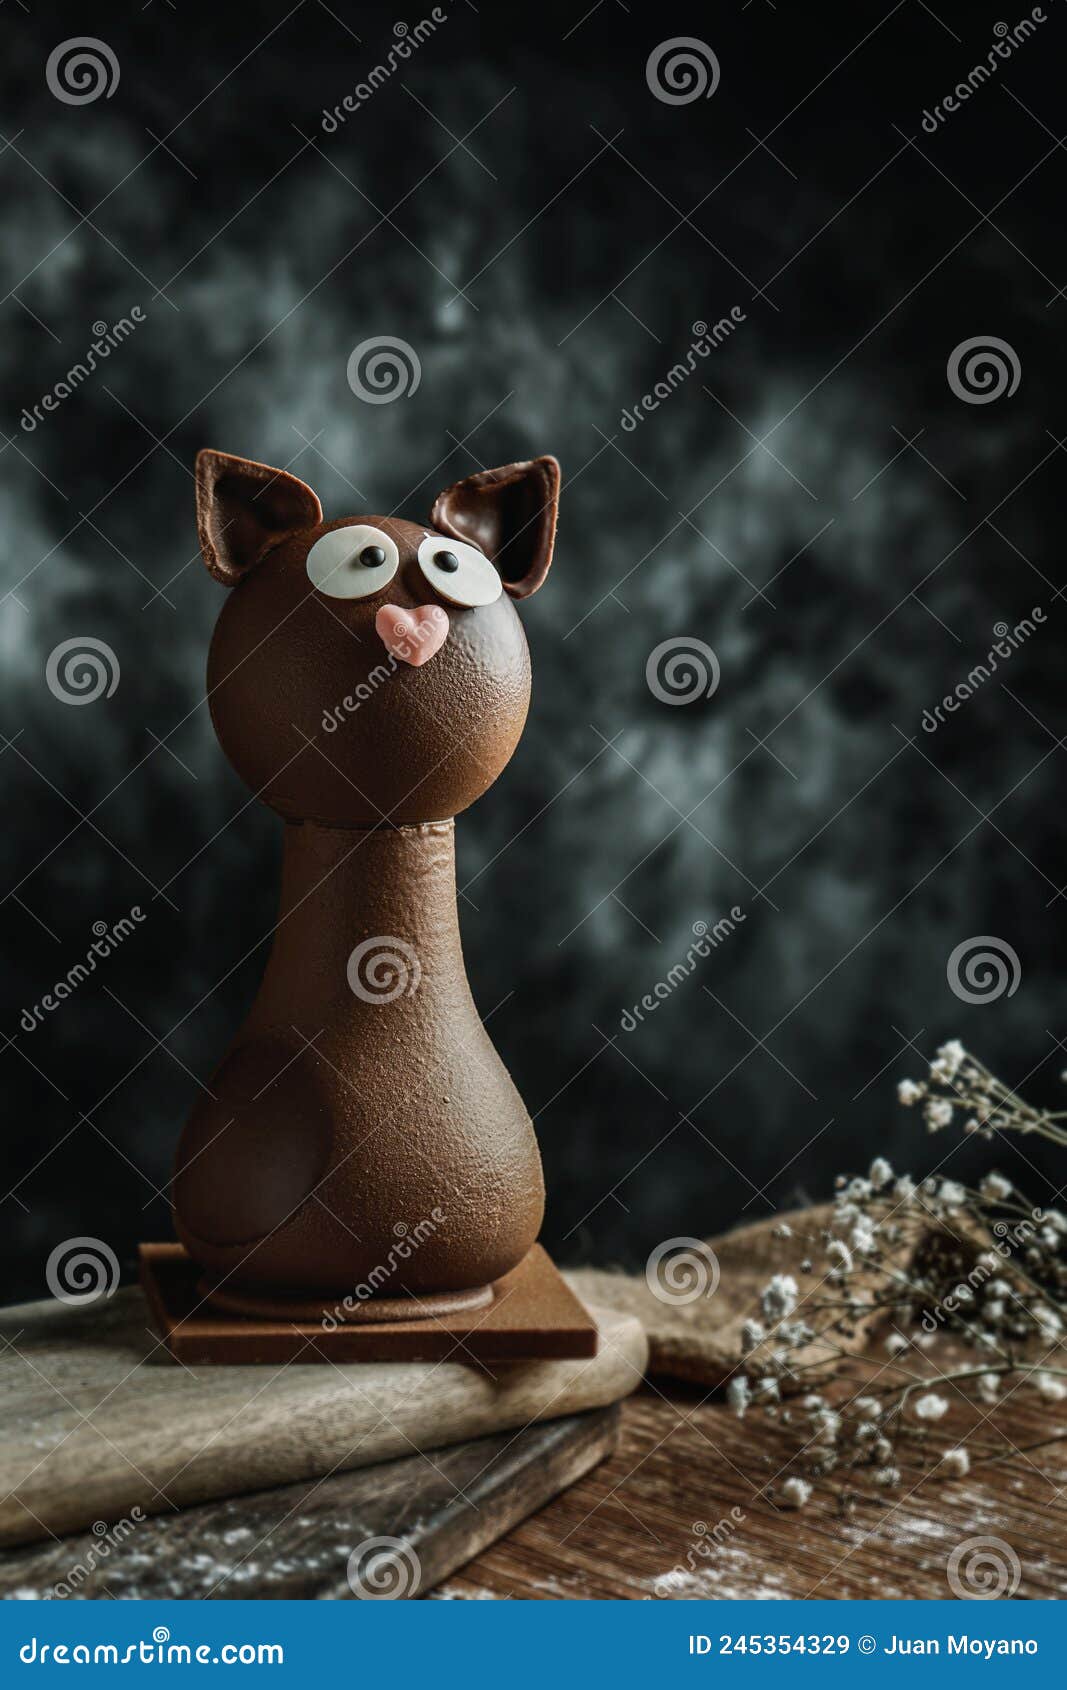 spanish mona de pascua in the  of a cat